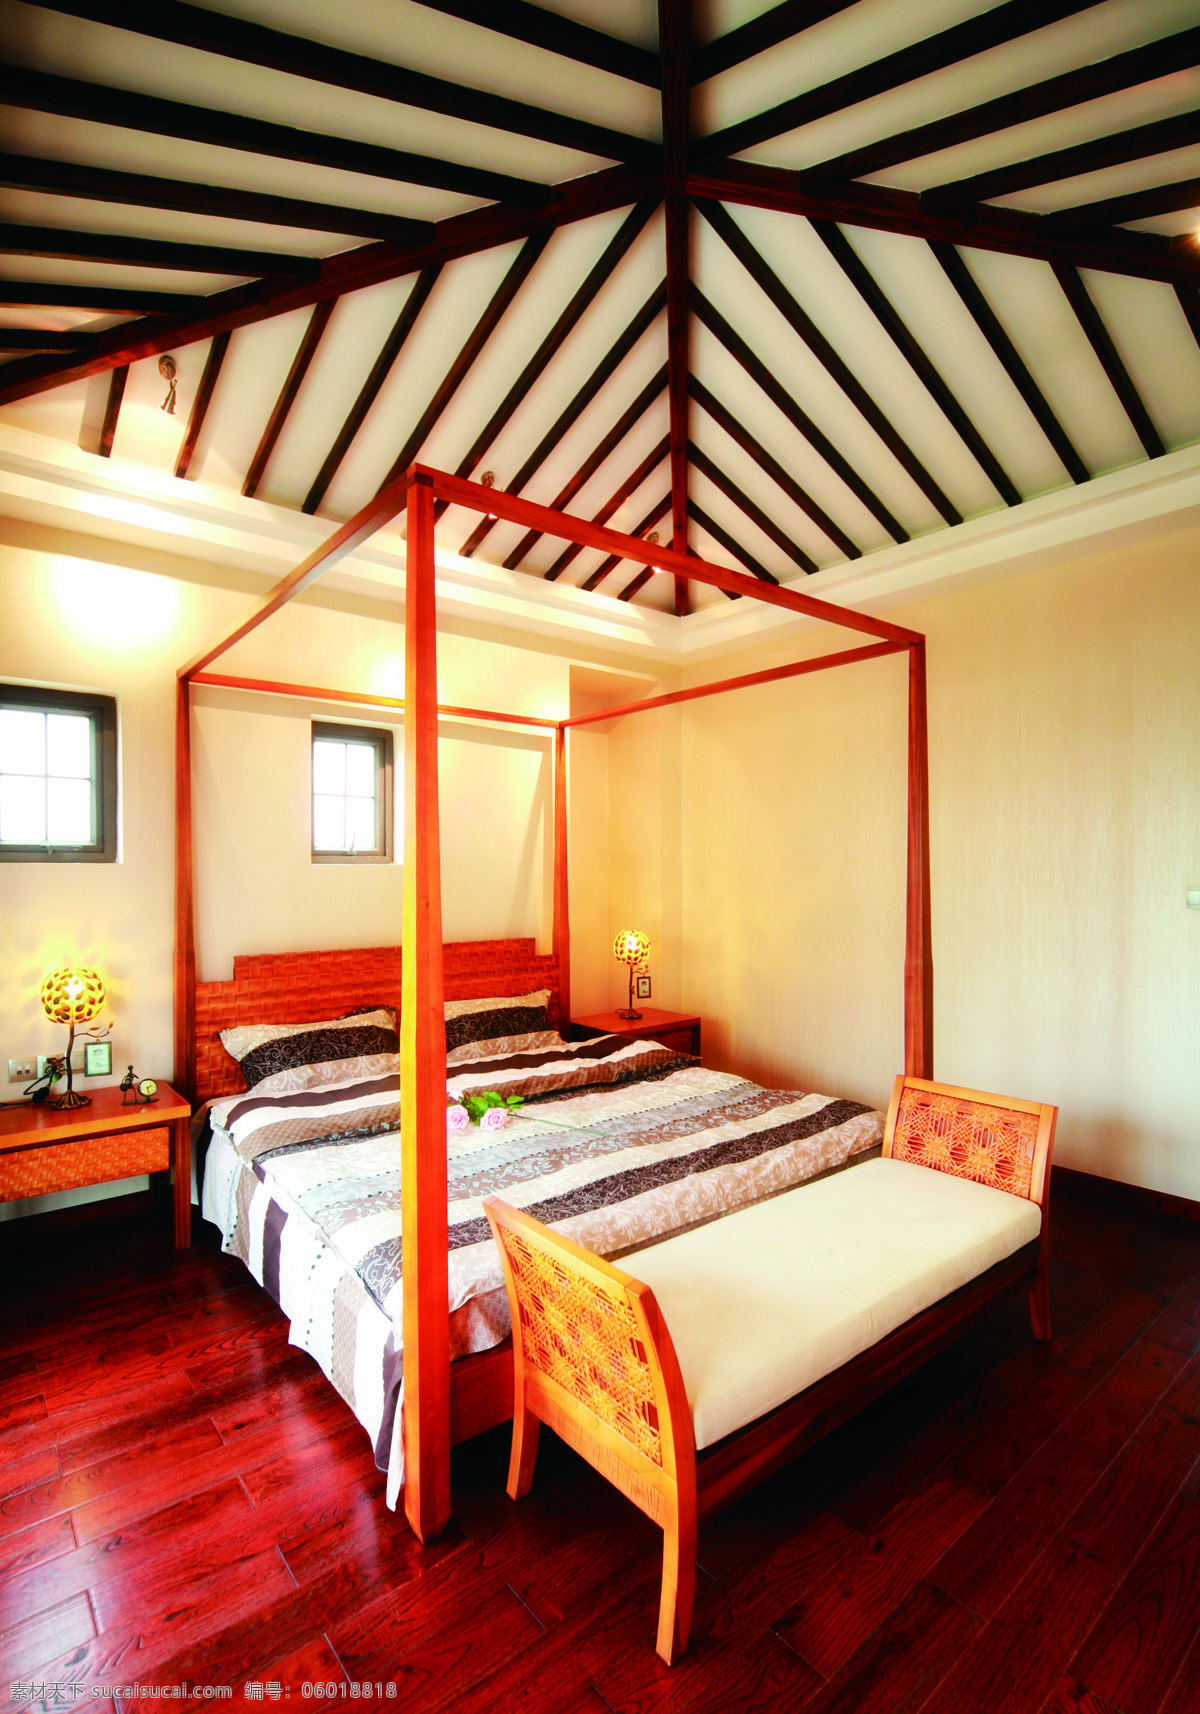 东南亚 亮 色系 卧室 室内装修 效果图 红色木地板 木制床头柜 卧室装修 热情明媚风格